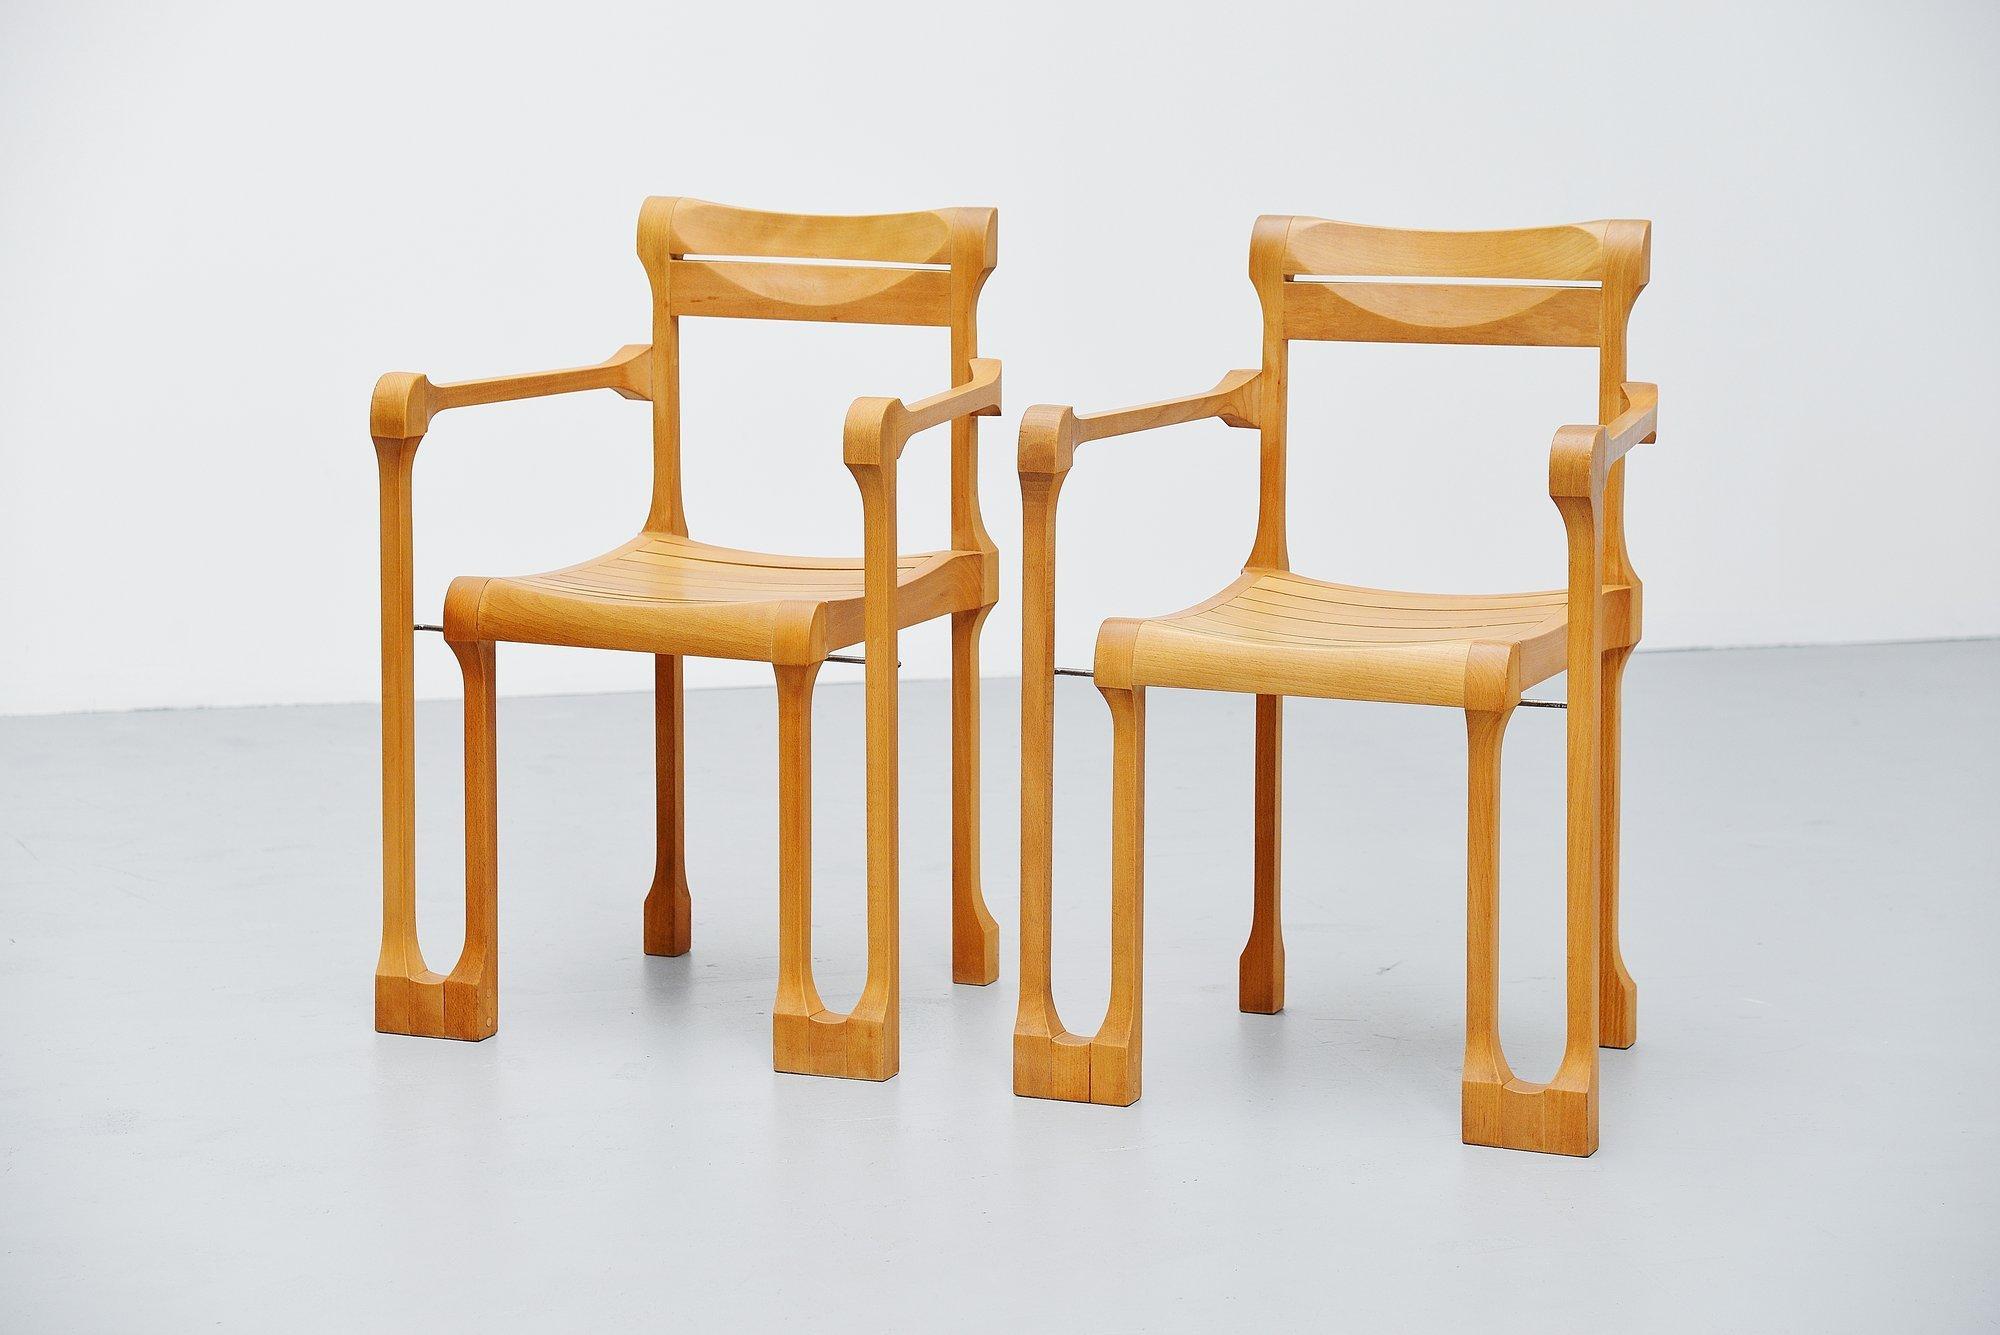 Sehr schönes Paar Sessel:: entworfen und hergestellt von Ruud Jan Kokke:: Holland 1990. Diese Stühle stammen aus der Serie 'pootjes' und wurden im Atelier von Ruud Jan Kokke handgefertigt und nur auf Anfrage hergestellt. Die Stühle und Hocker aus